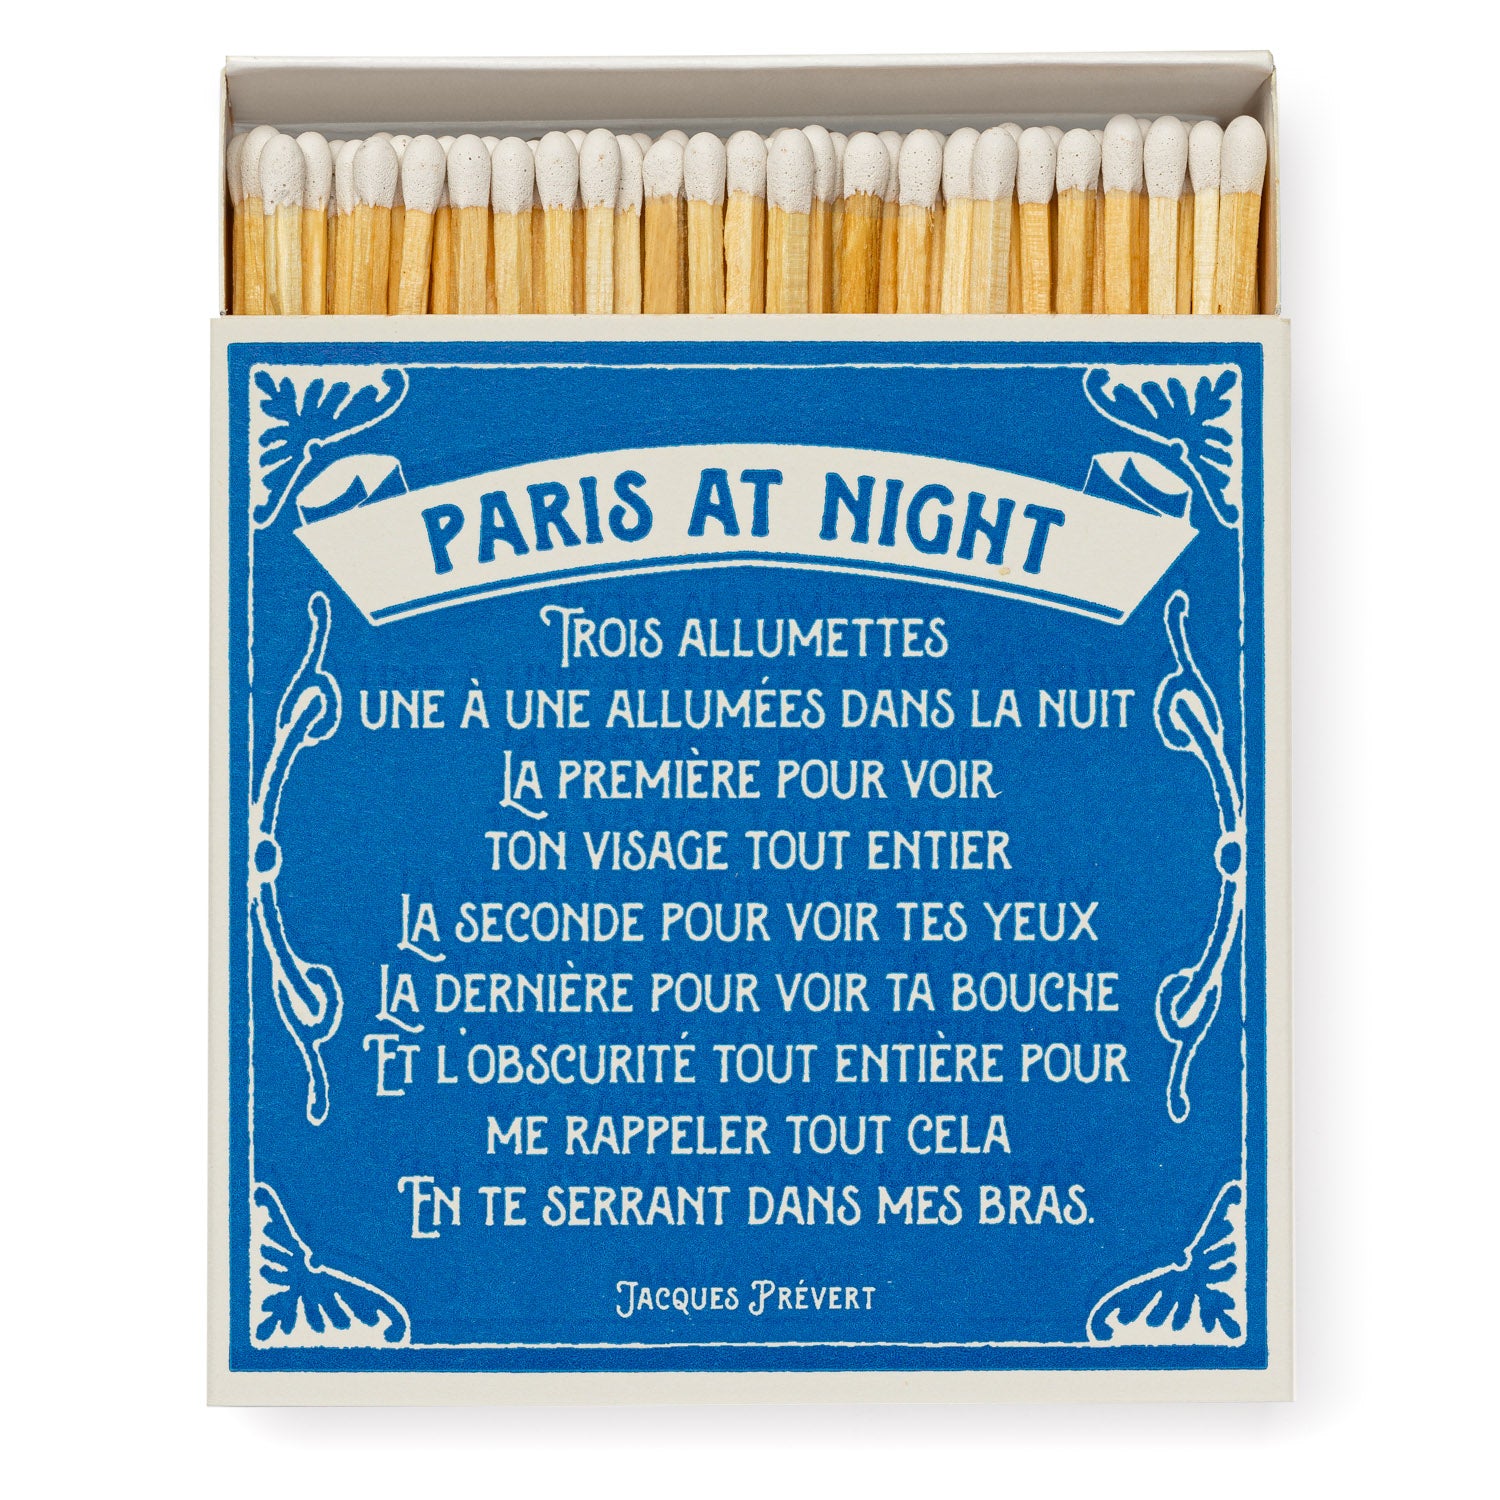 Bougies parfumées et allumettes Étiqueté paris at night - 123